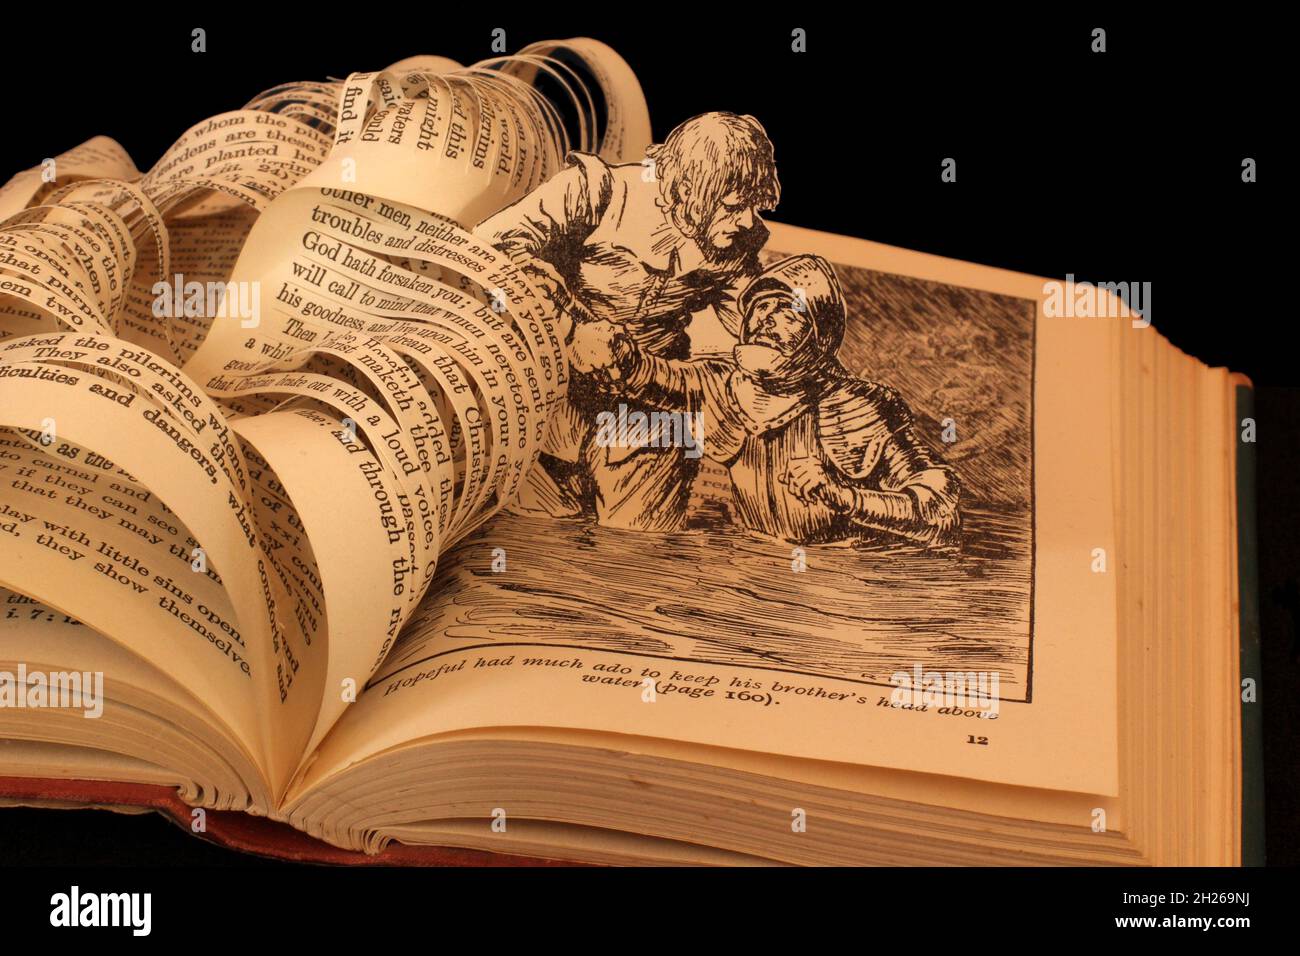 Escultura de libro hecha del progreso del peregrino por John Bunyan esperanzado rescatando a su hermano de ahogarse el arte de papel. Foto de stock